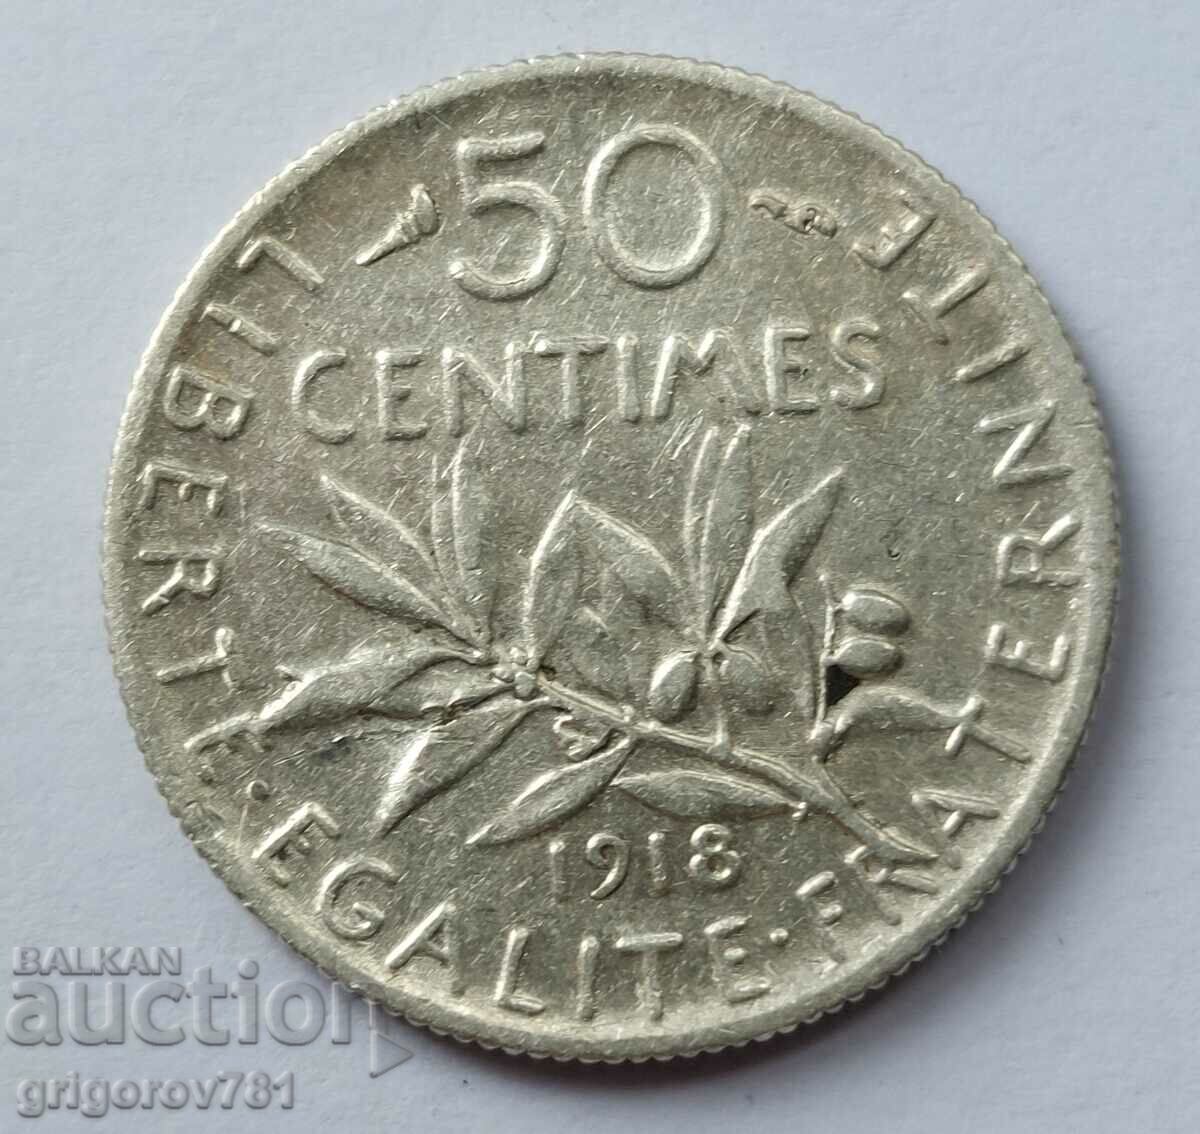 Ασημένιο 50 εκατοστά Γαλλία 1918 - ασημένιο νόμισμα №65